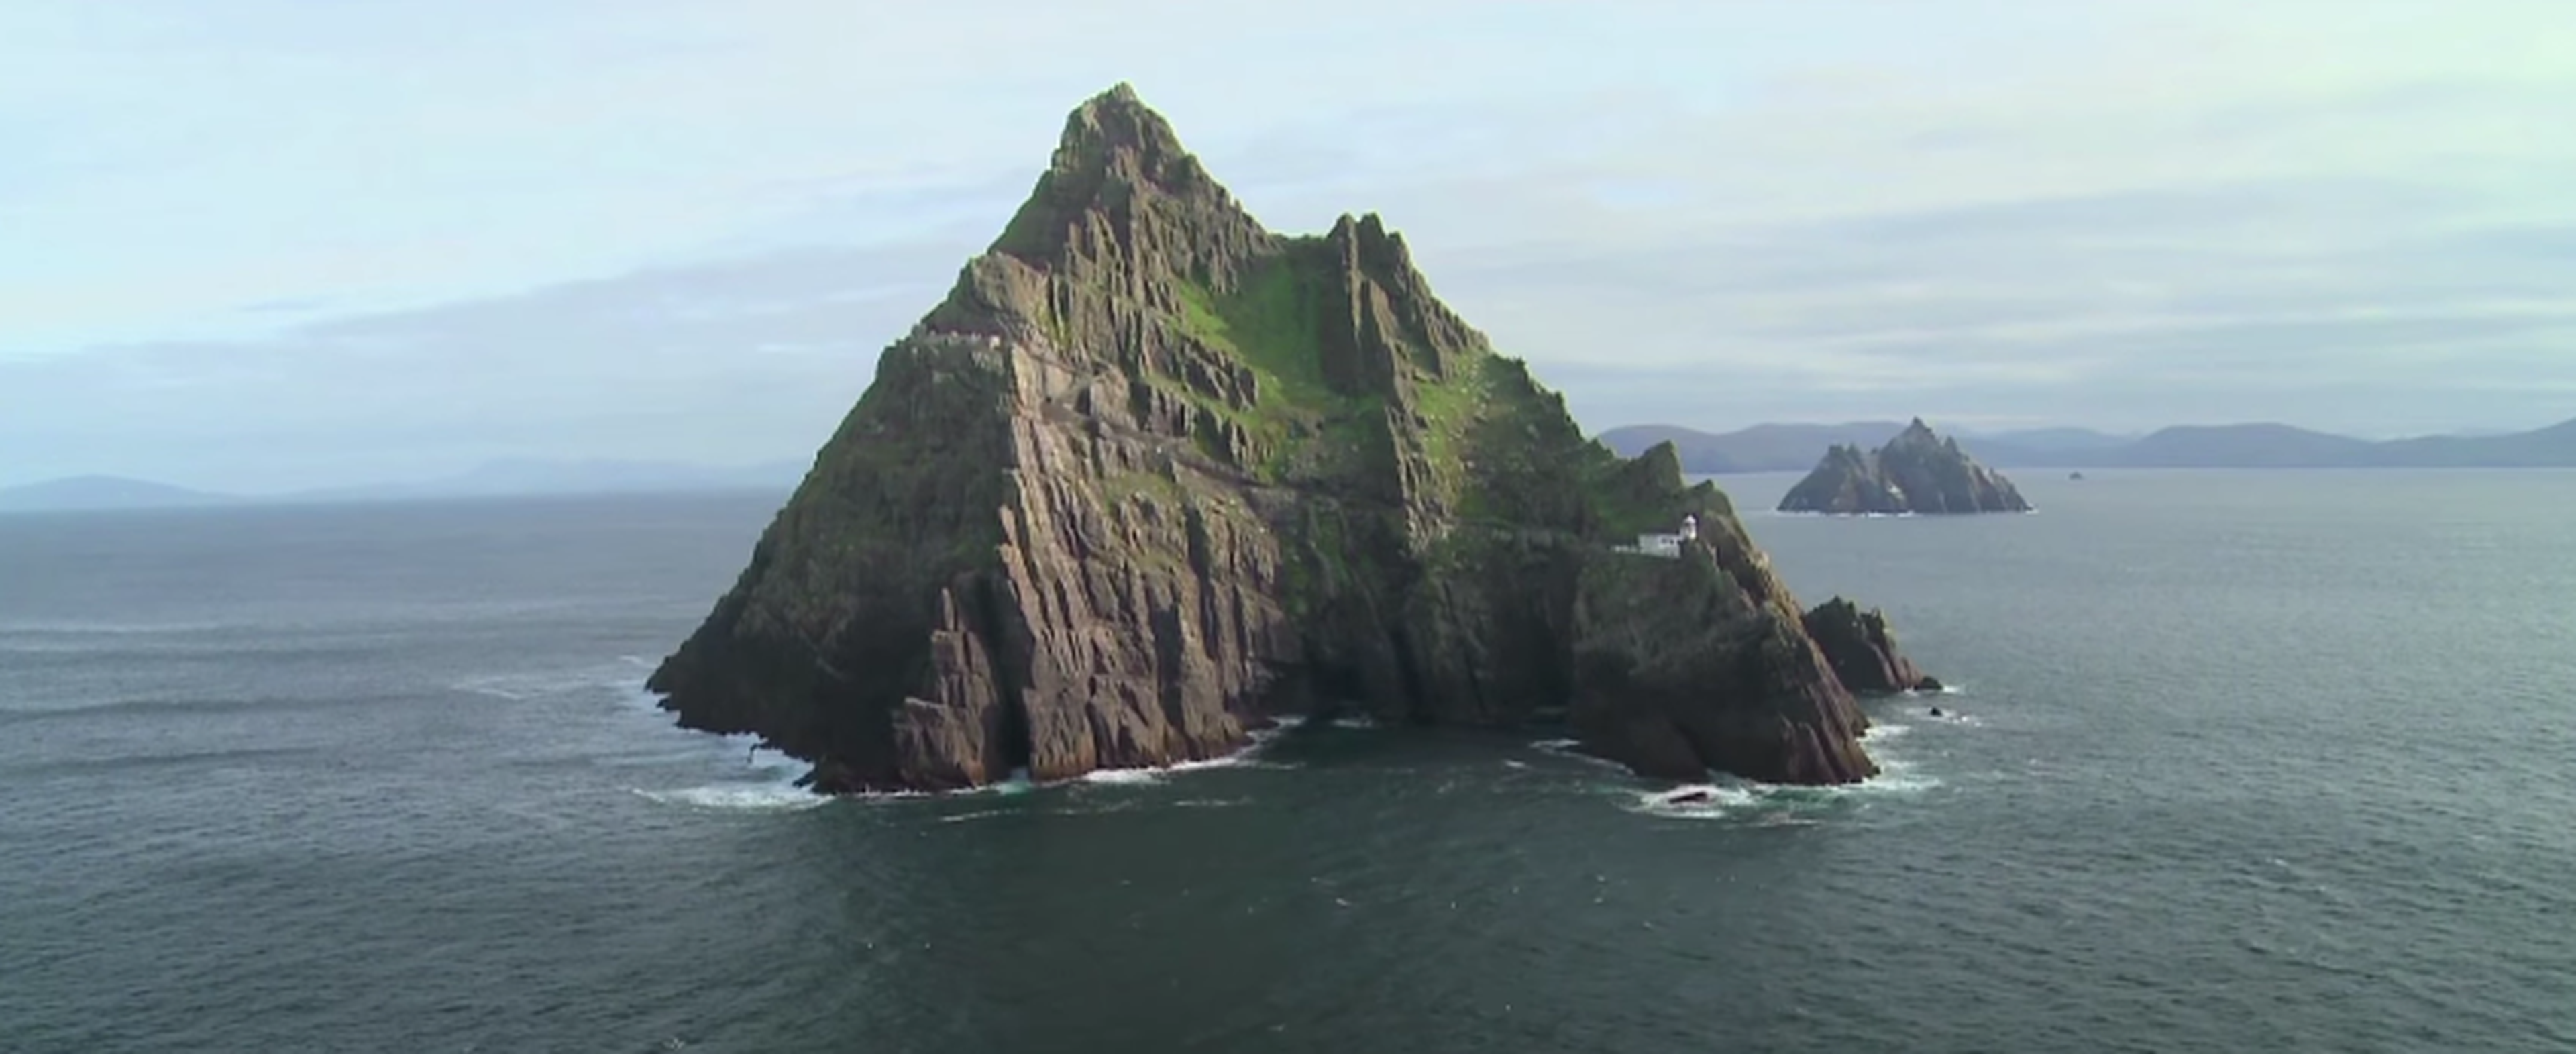 Star Wars: Los últimos Jedi se rodó casi entera en esta isla